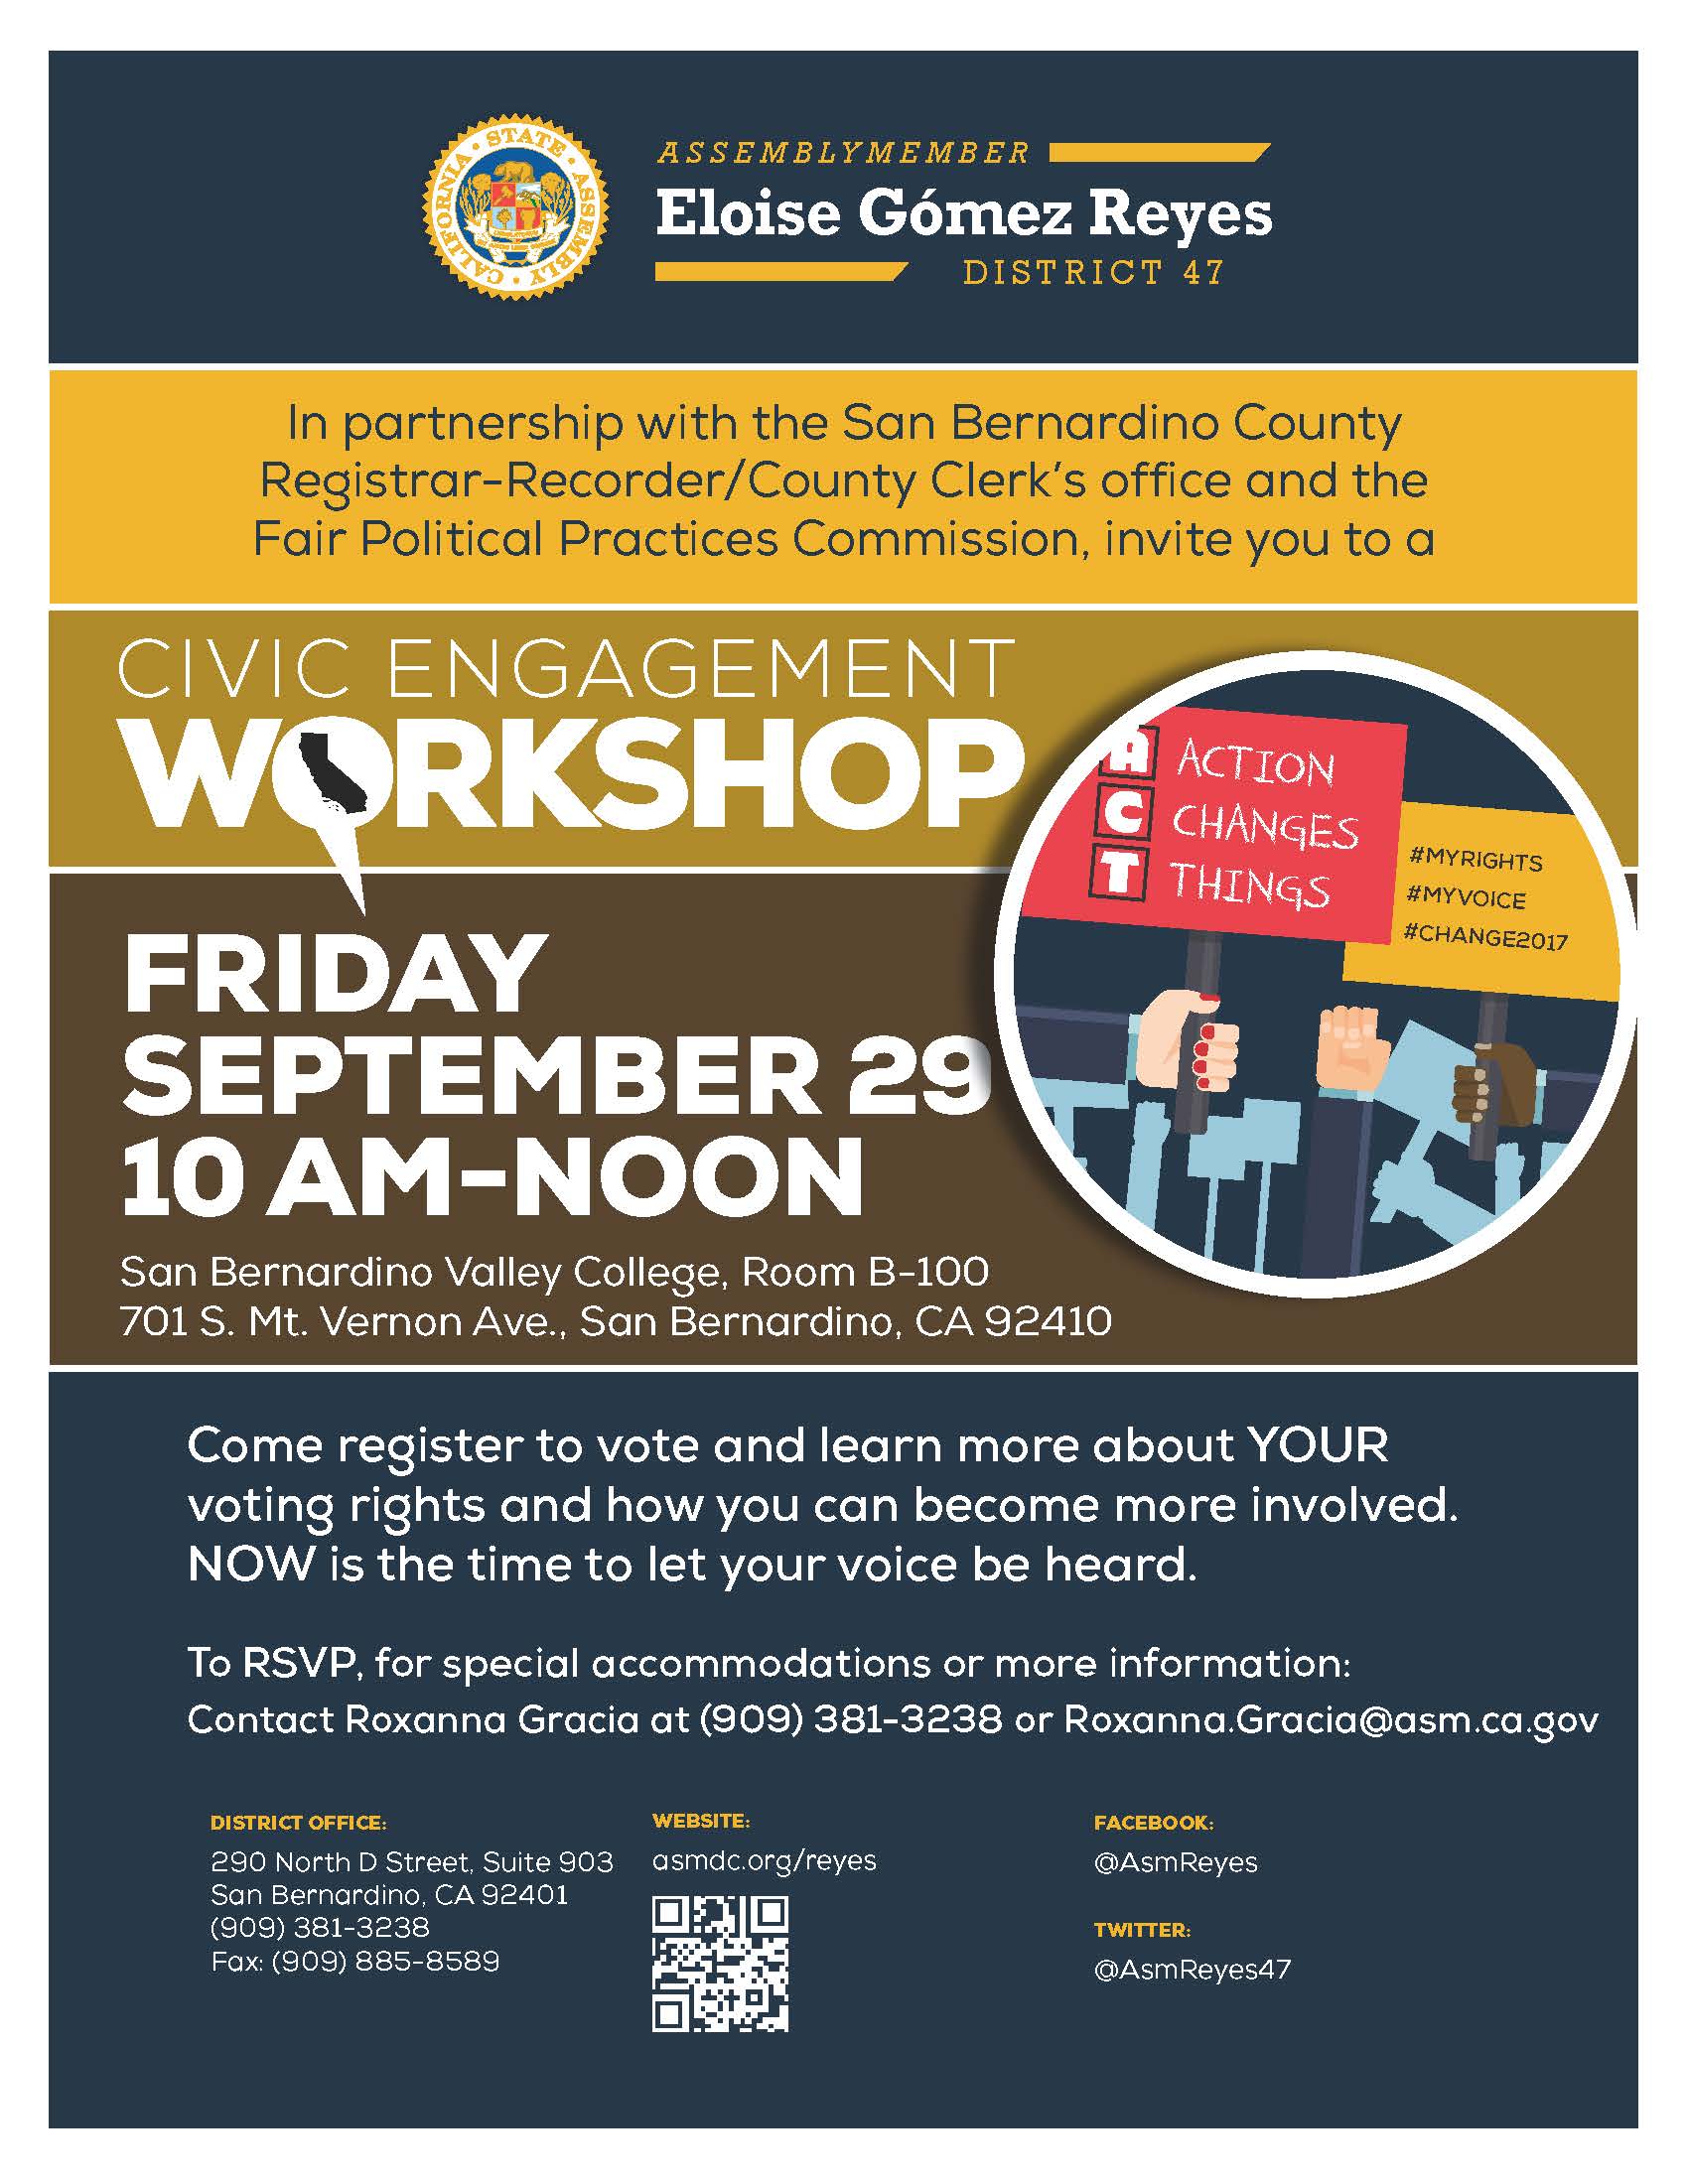 Civil Engagement Workshop on September 29. 2017